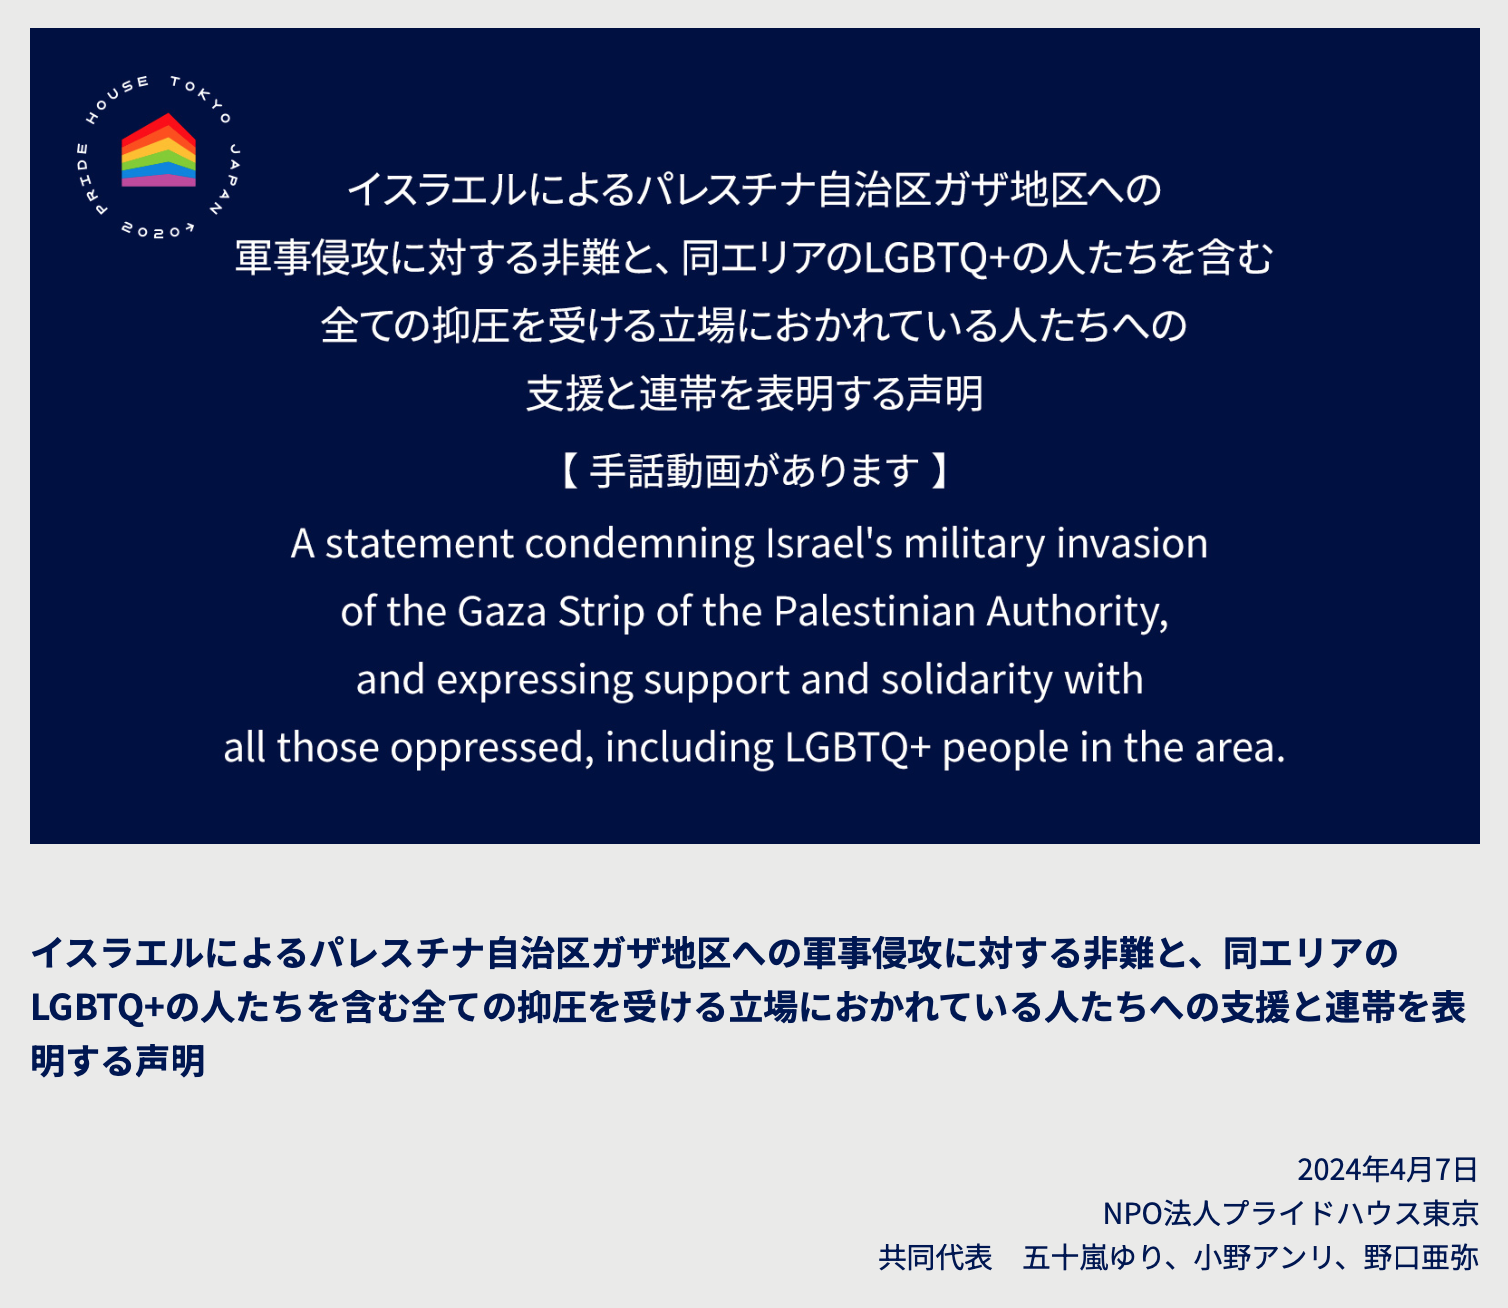 NPO法人プライドハウス東京の二つの声明を支持します